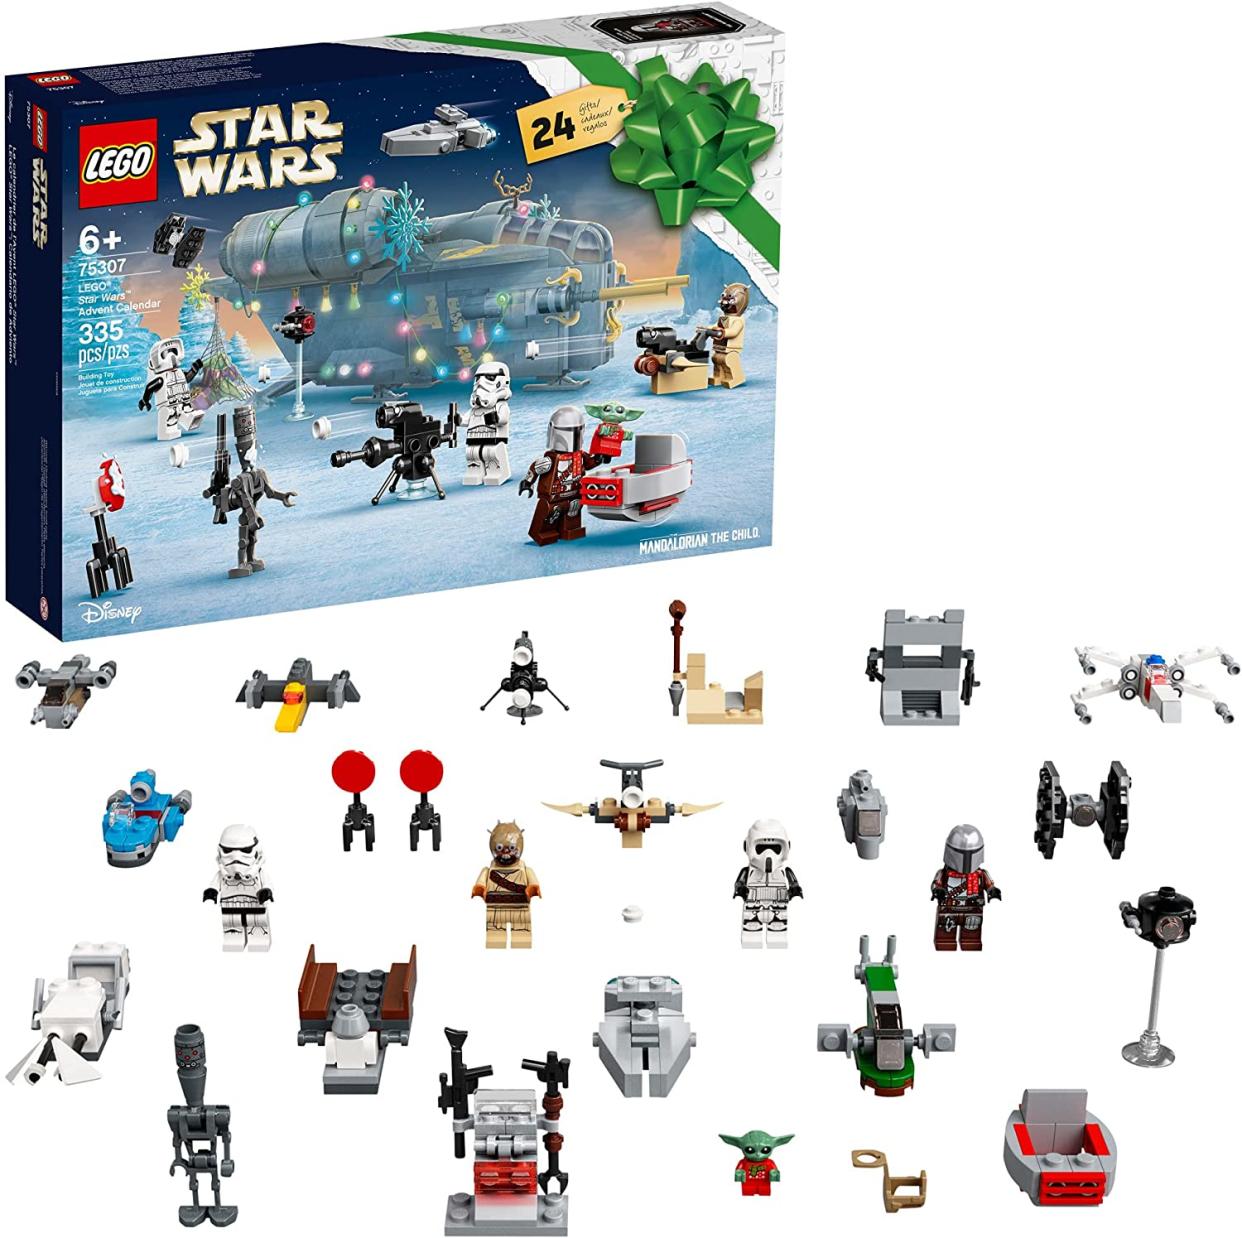 "Star Wars" Lego Advent Calendar